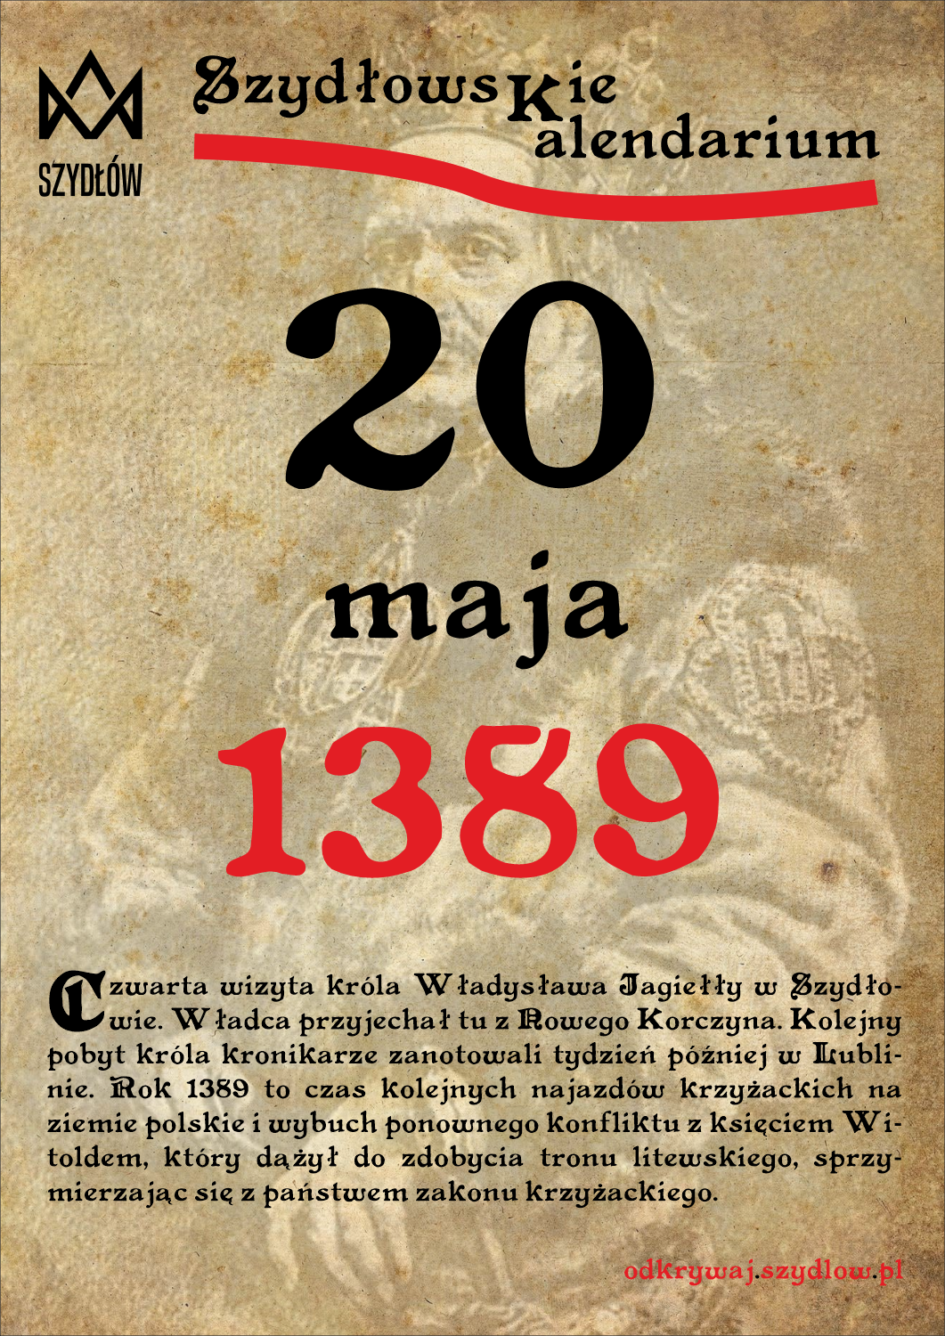 Władysław Jagiełło 1389, 20 maja, wizyta w Szydłowie